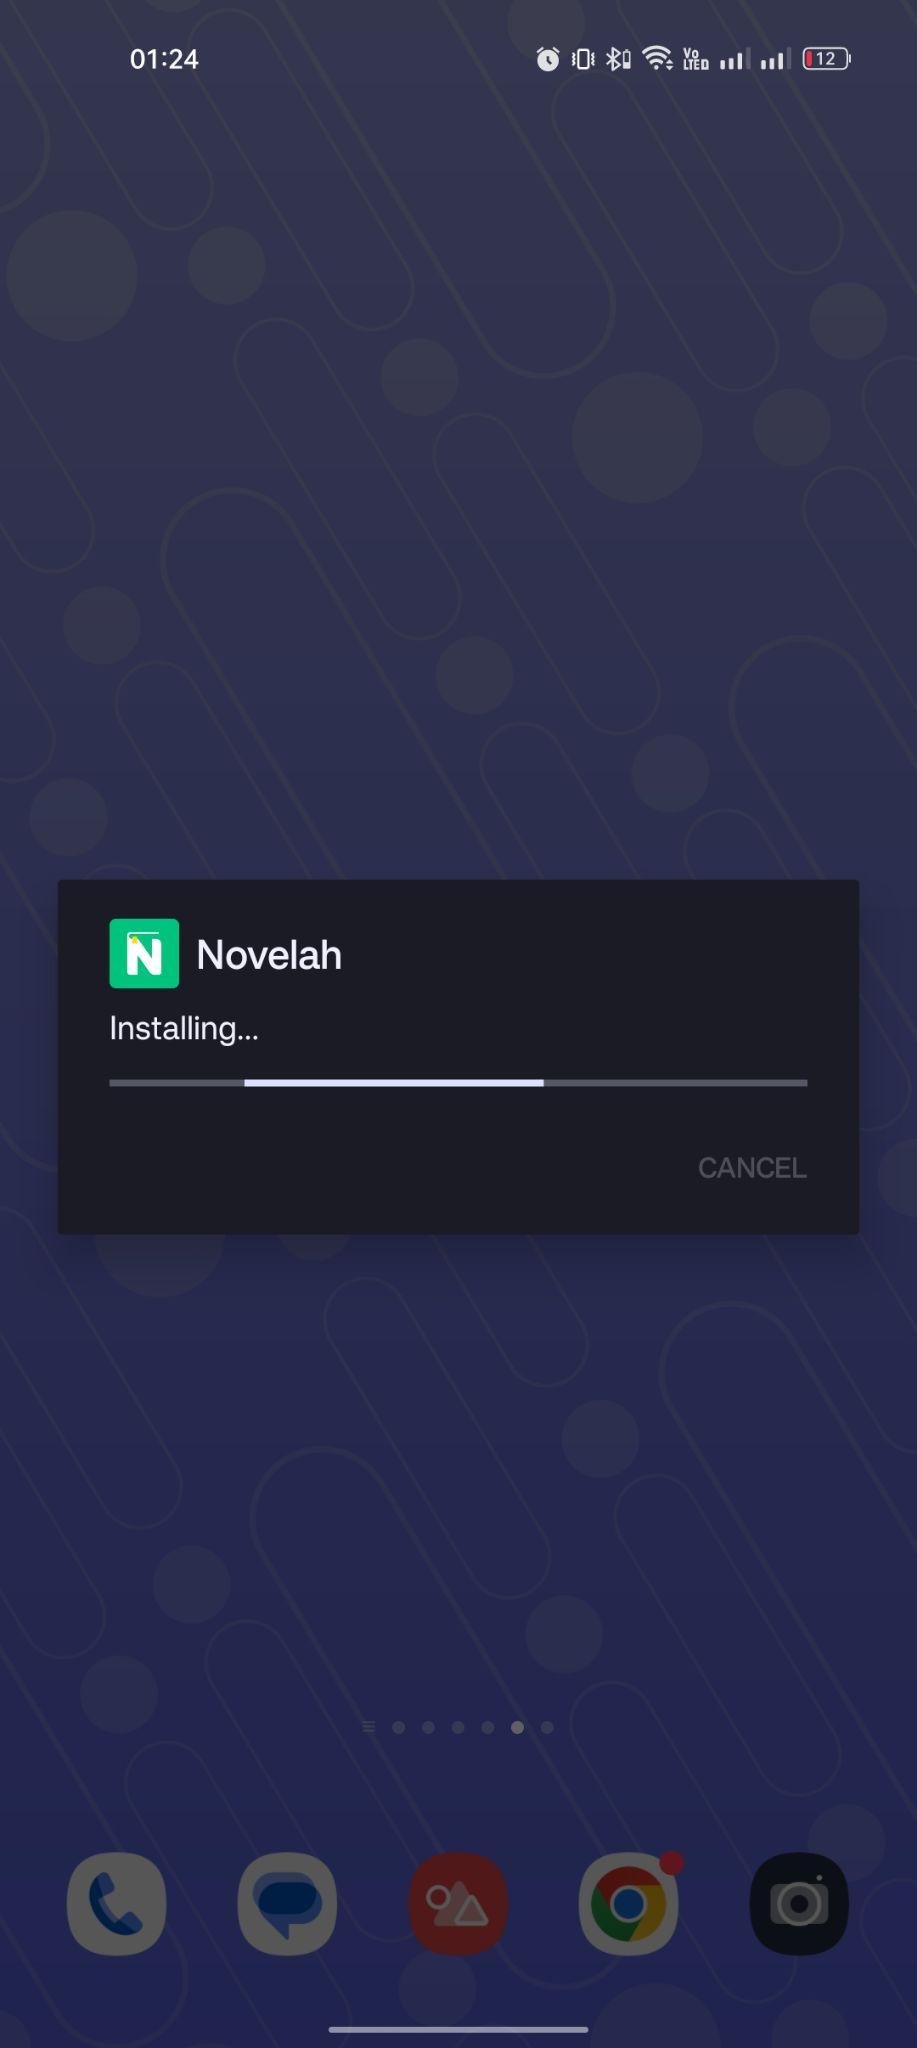 Novelah apk installing